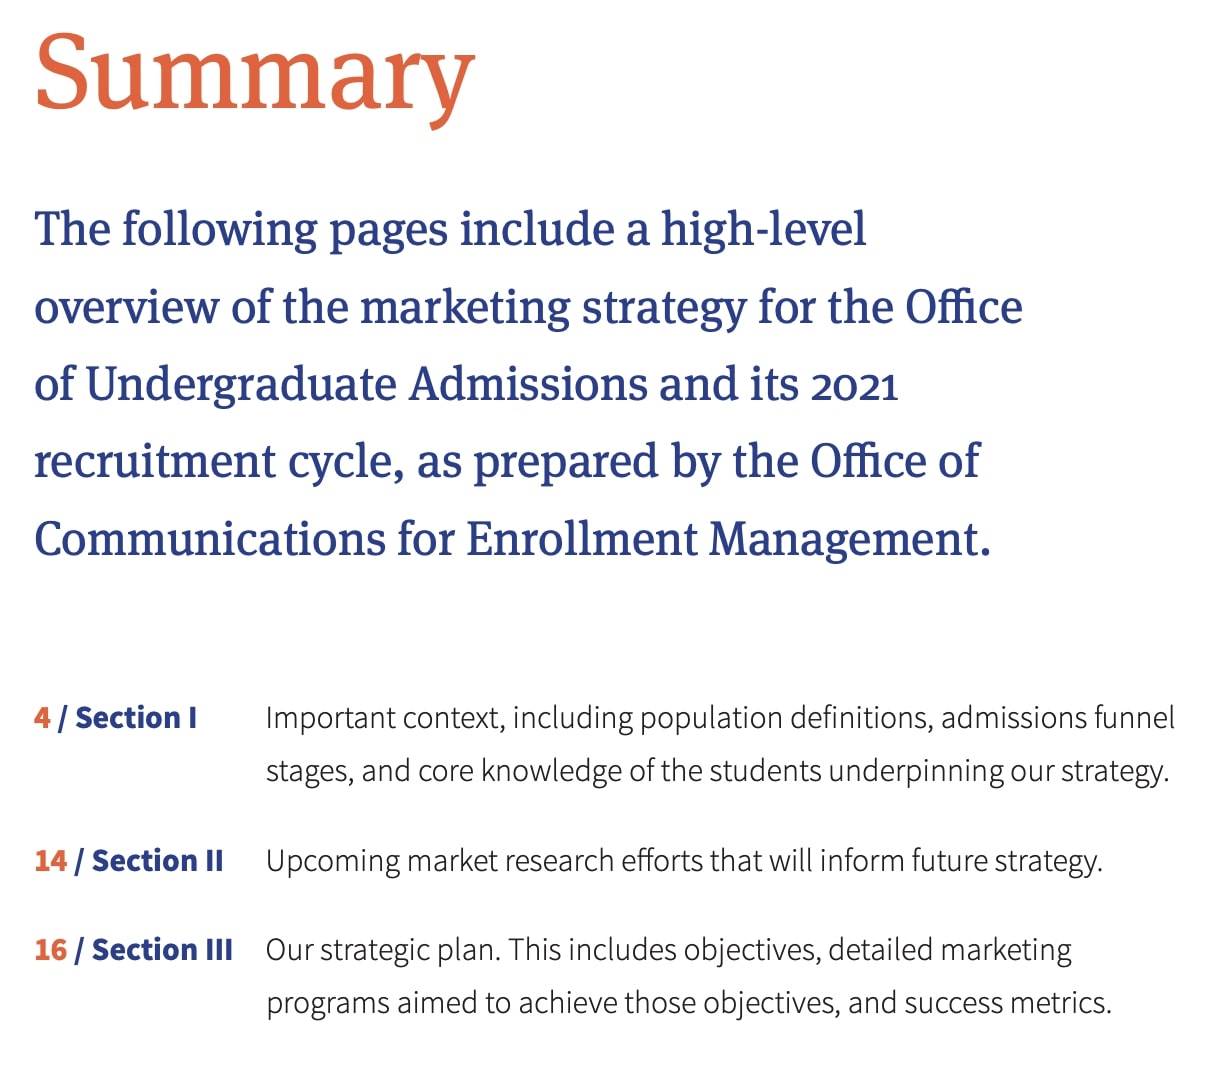 Summary of the University of Illinois's marketing plan